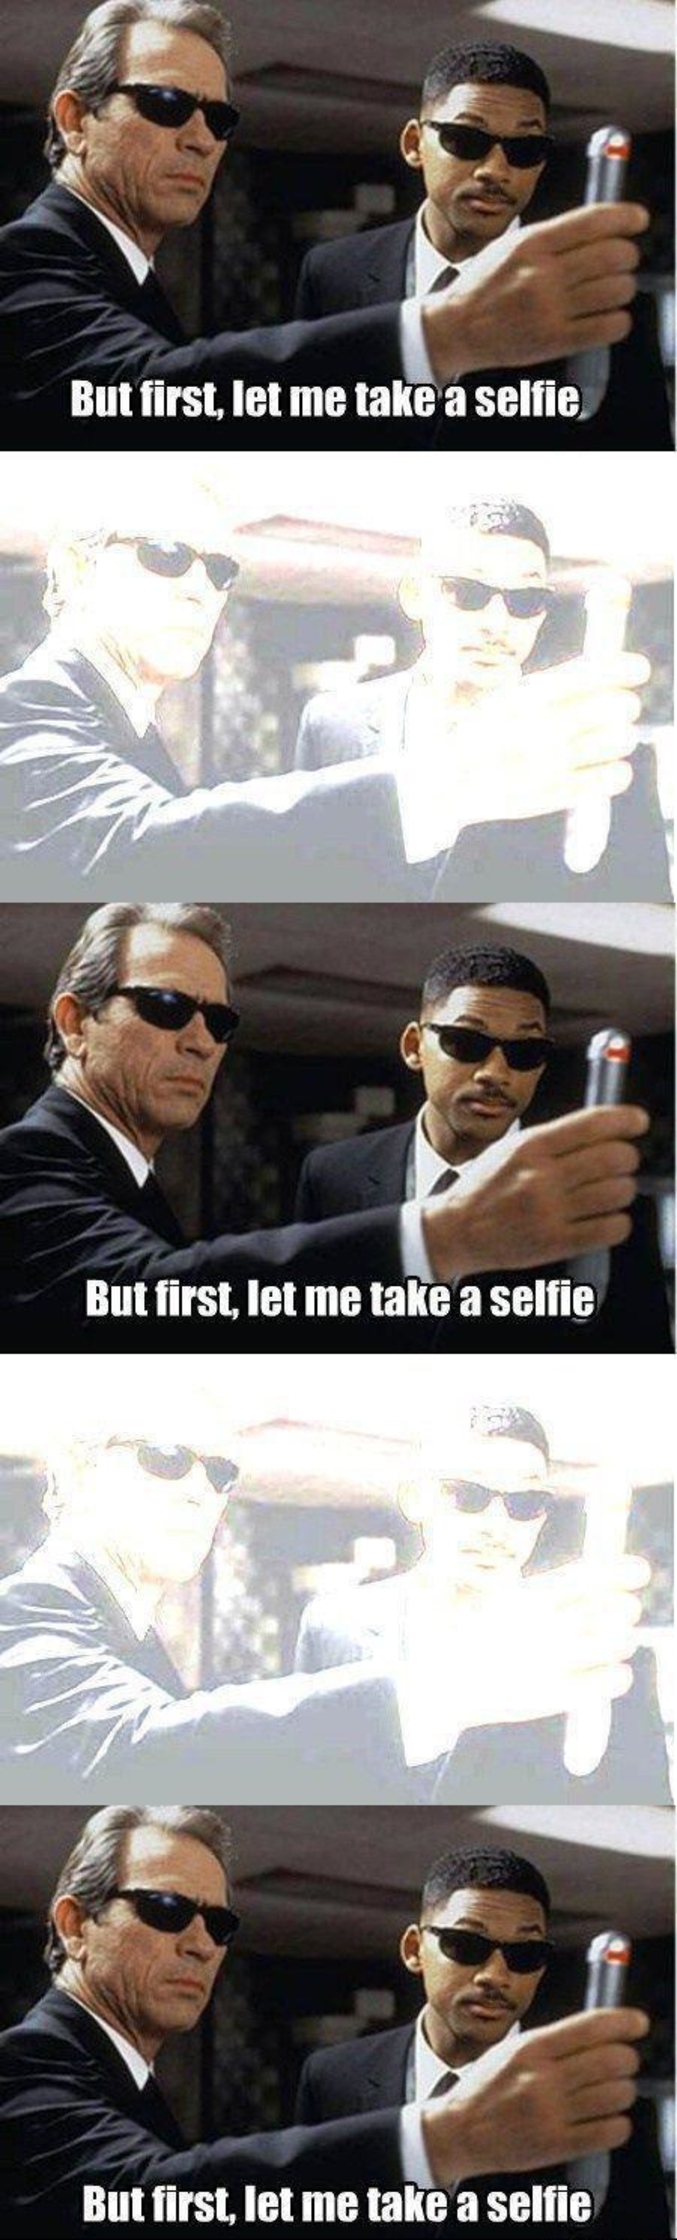 Prendre un selfie.
Prendre un selfie.
Prendre un selfie.